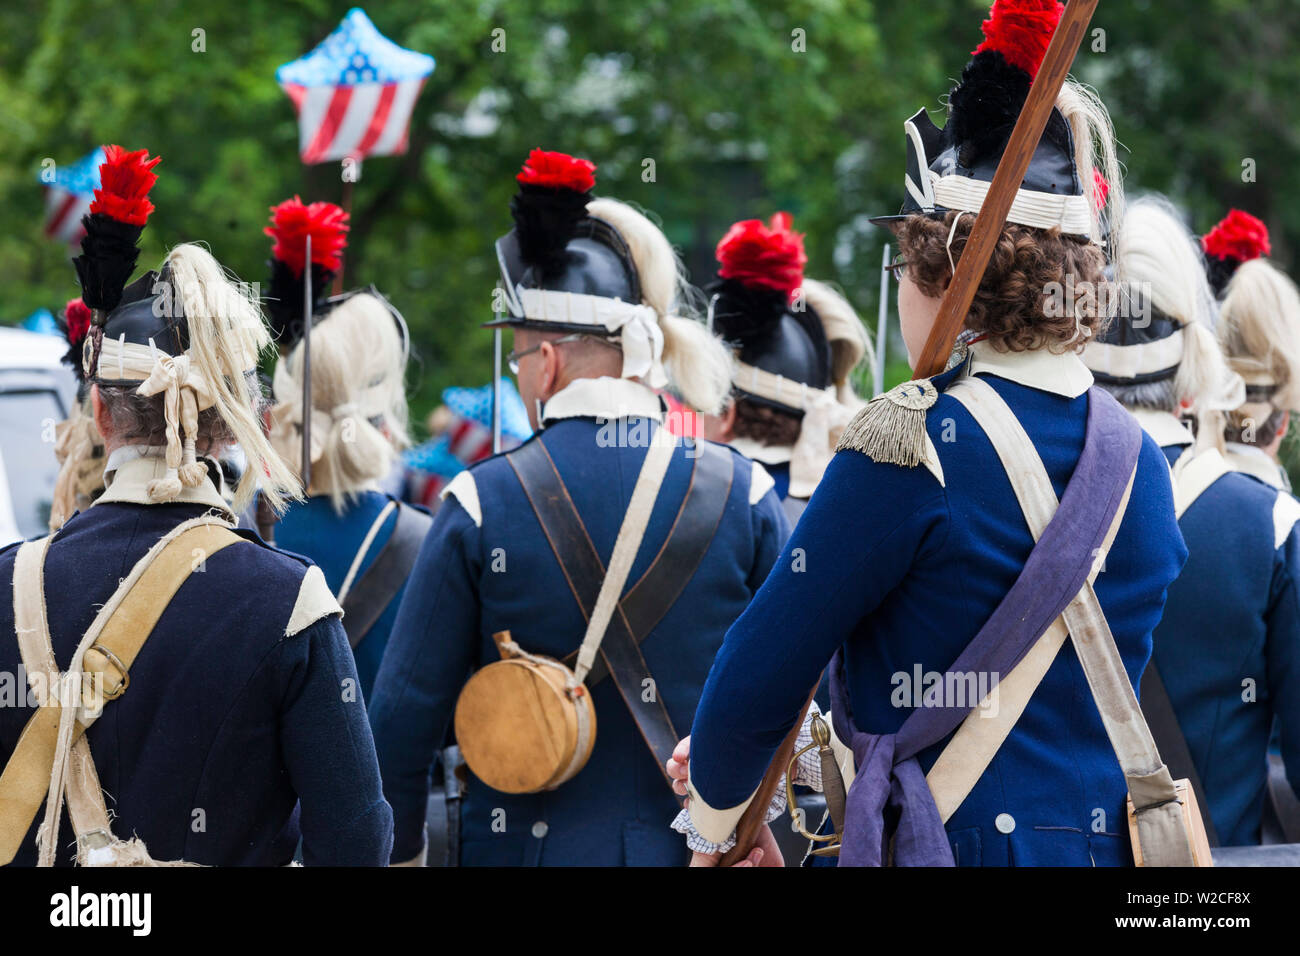 USA, Massachusetts, Cape Ann, Manchester am Meer, Viertel von Juli Parade, Re-enactors in Uniformen der Amerikanischen Revolution Stockfoto